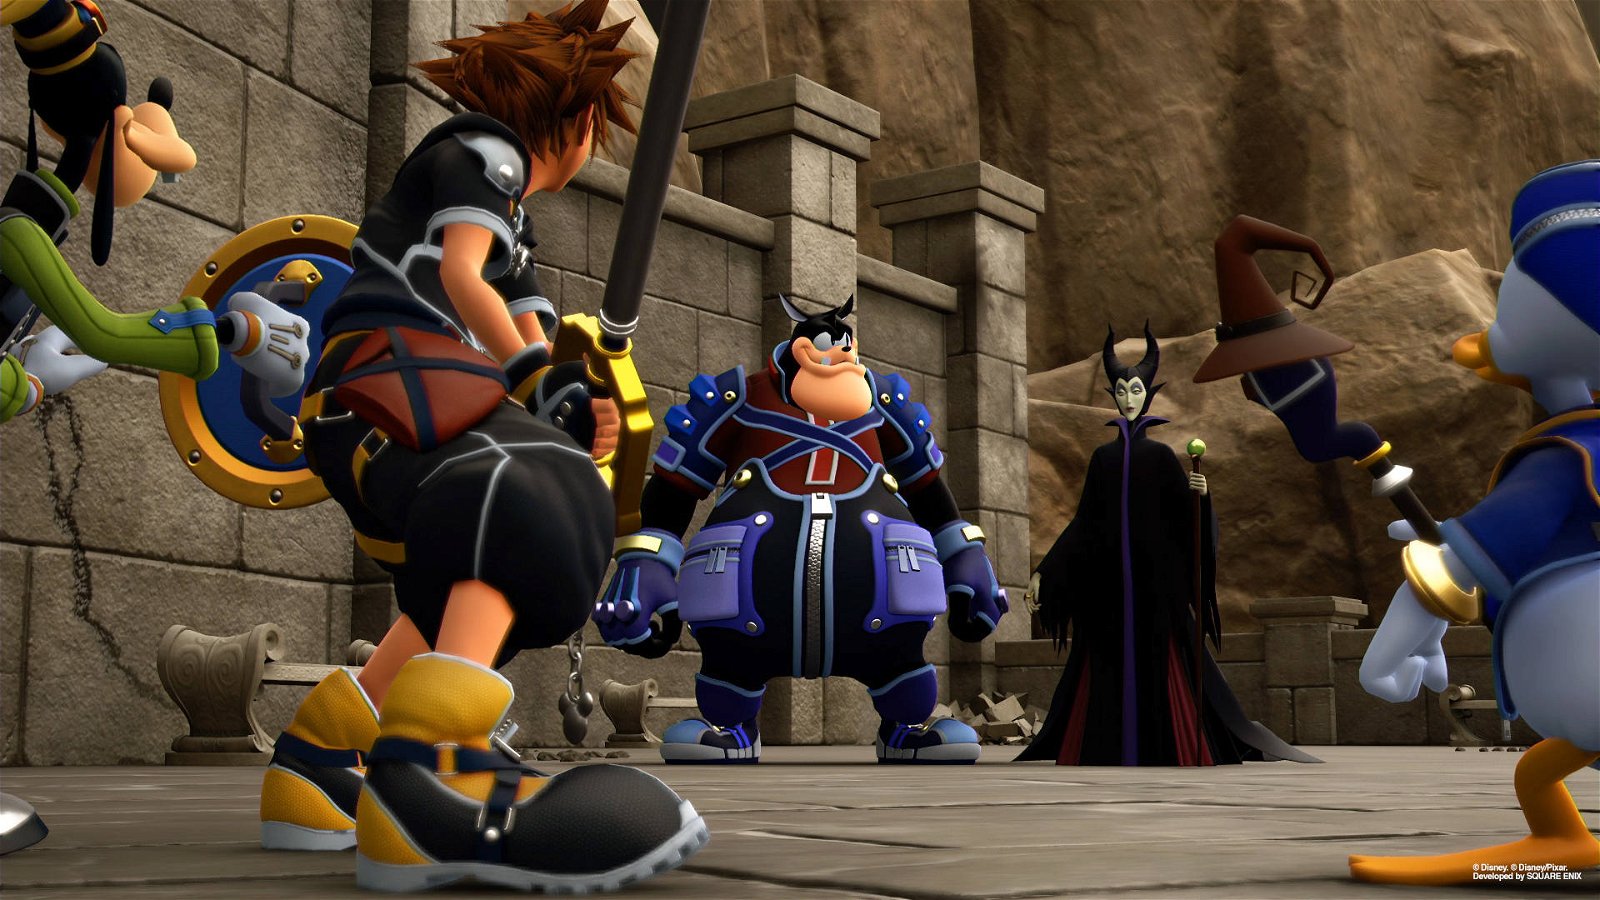 Immagine di Kingdom Hearts 3, i mondi Disney e quello che ci aspetta